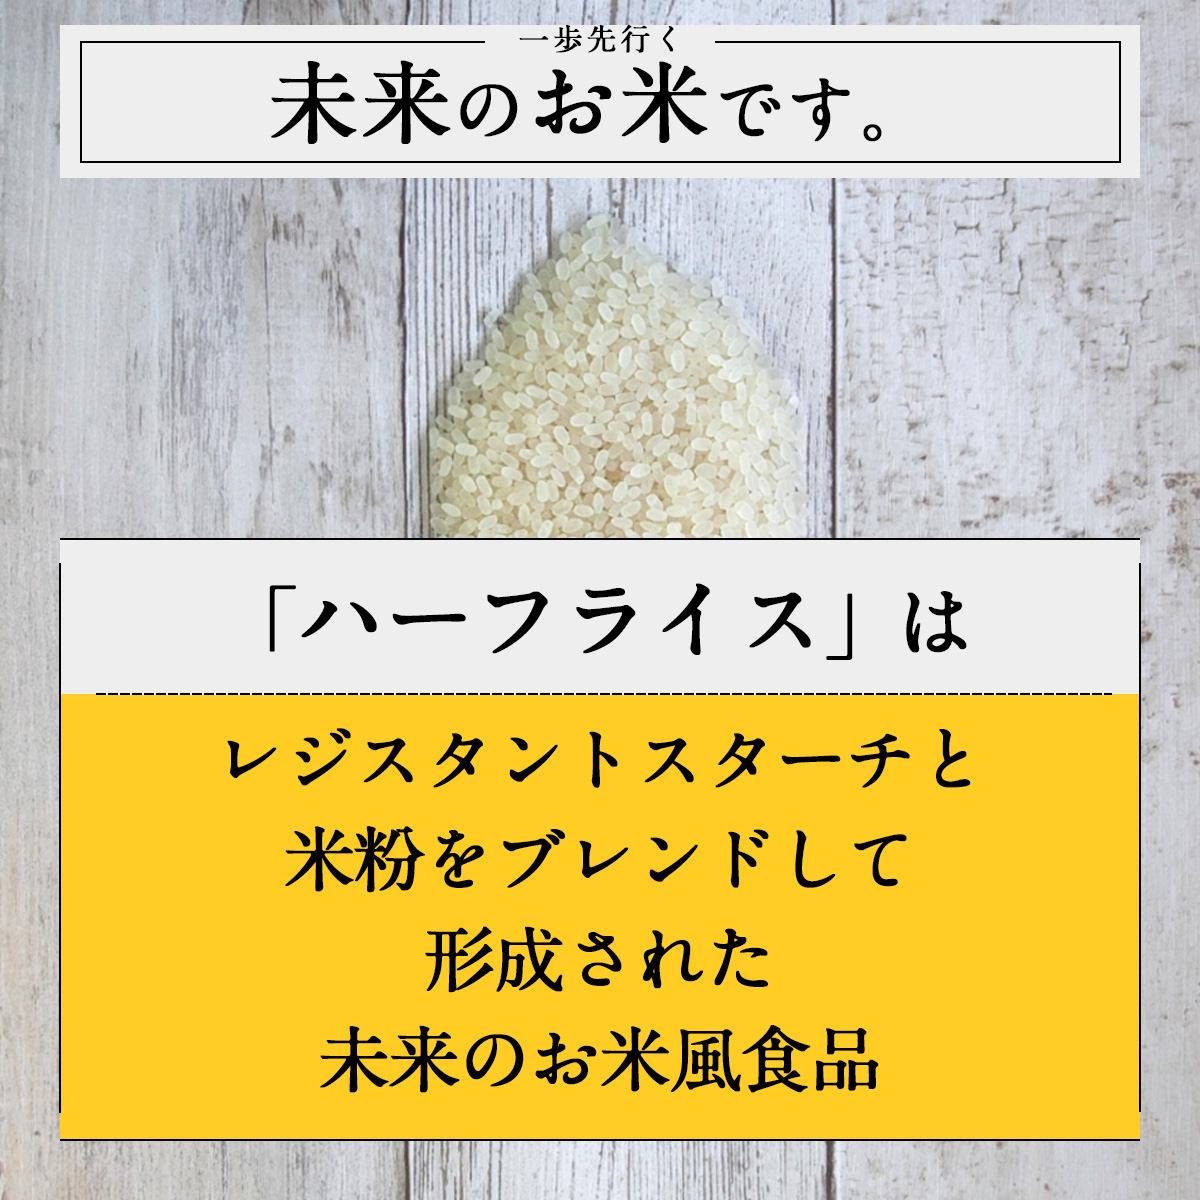 一歩先行く未来のお米です。「ハーフライス」はレジスタントスターチと米粉をブレンドして形成された未来のお米風食品